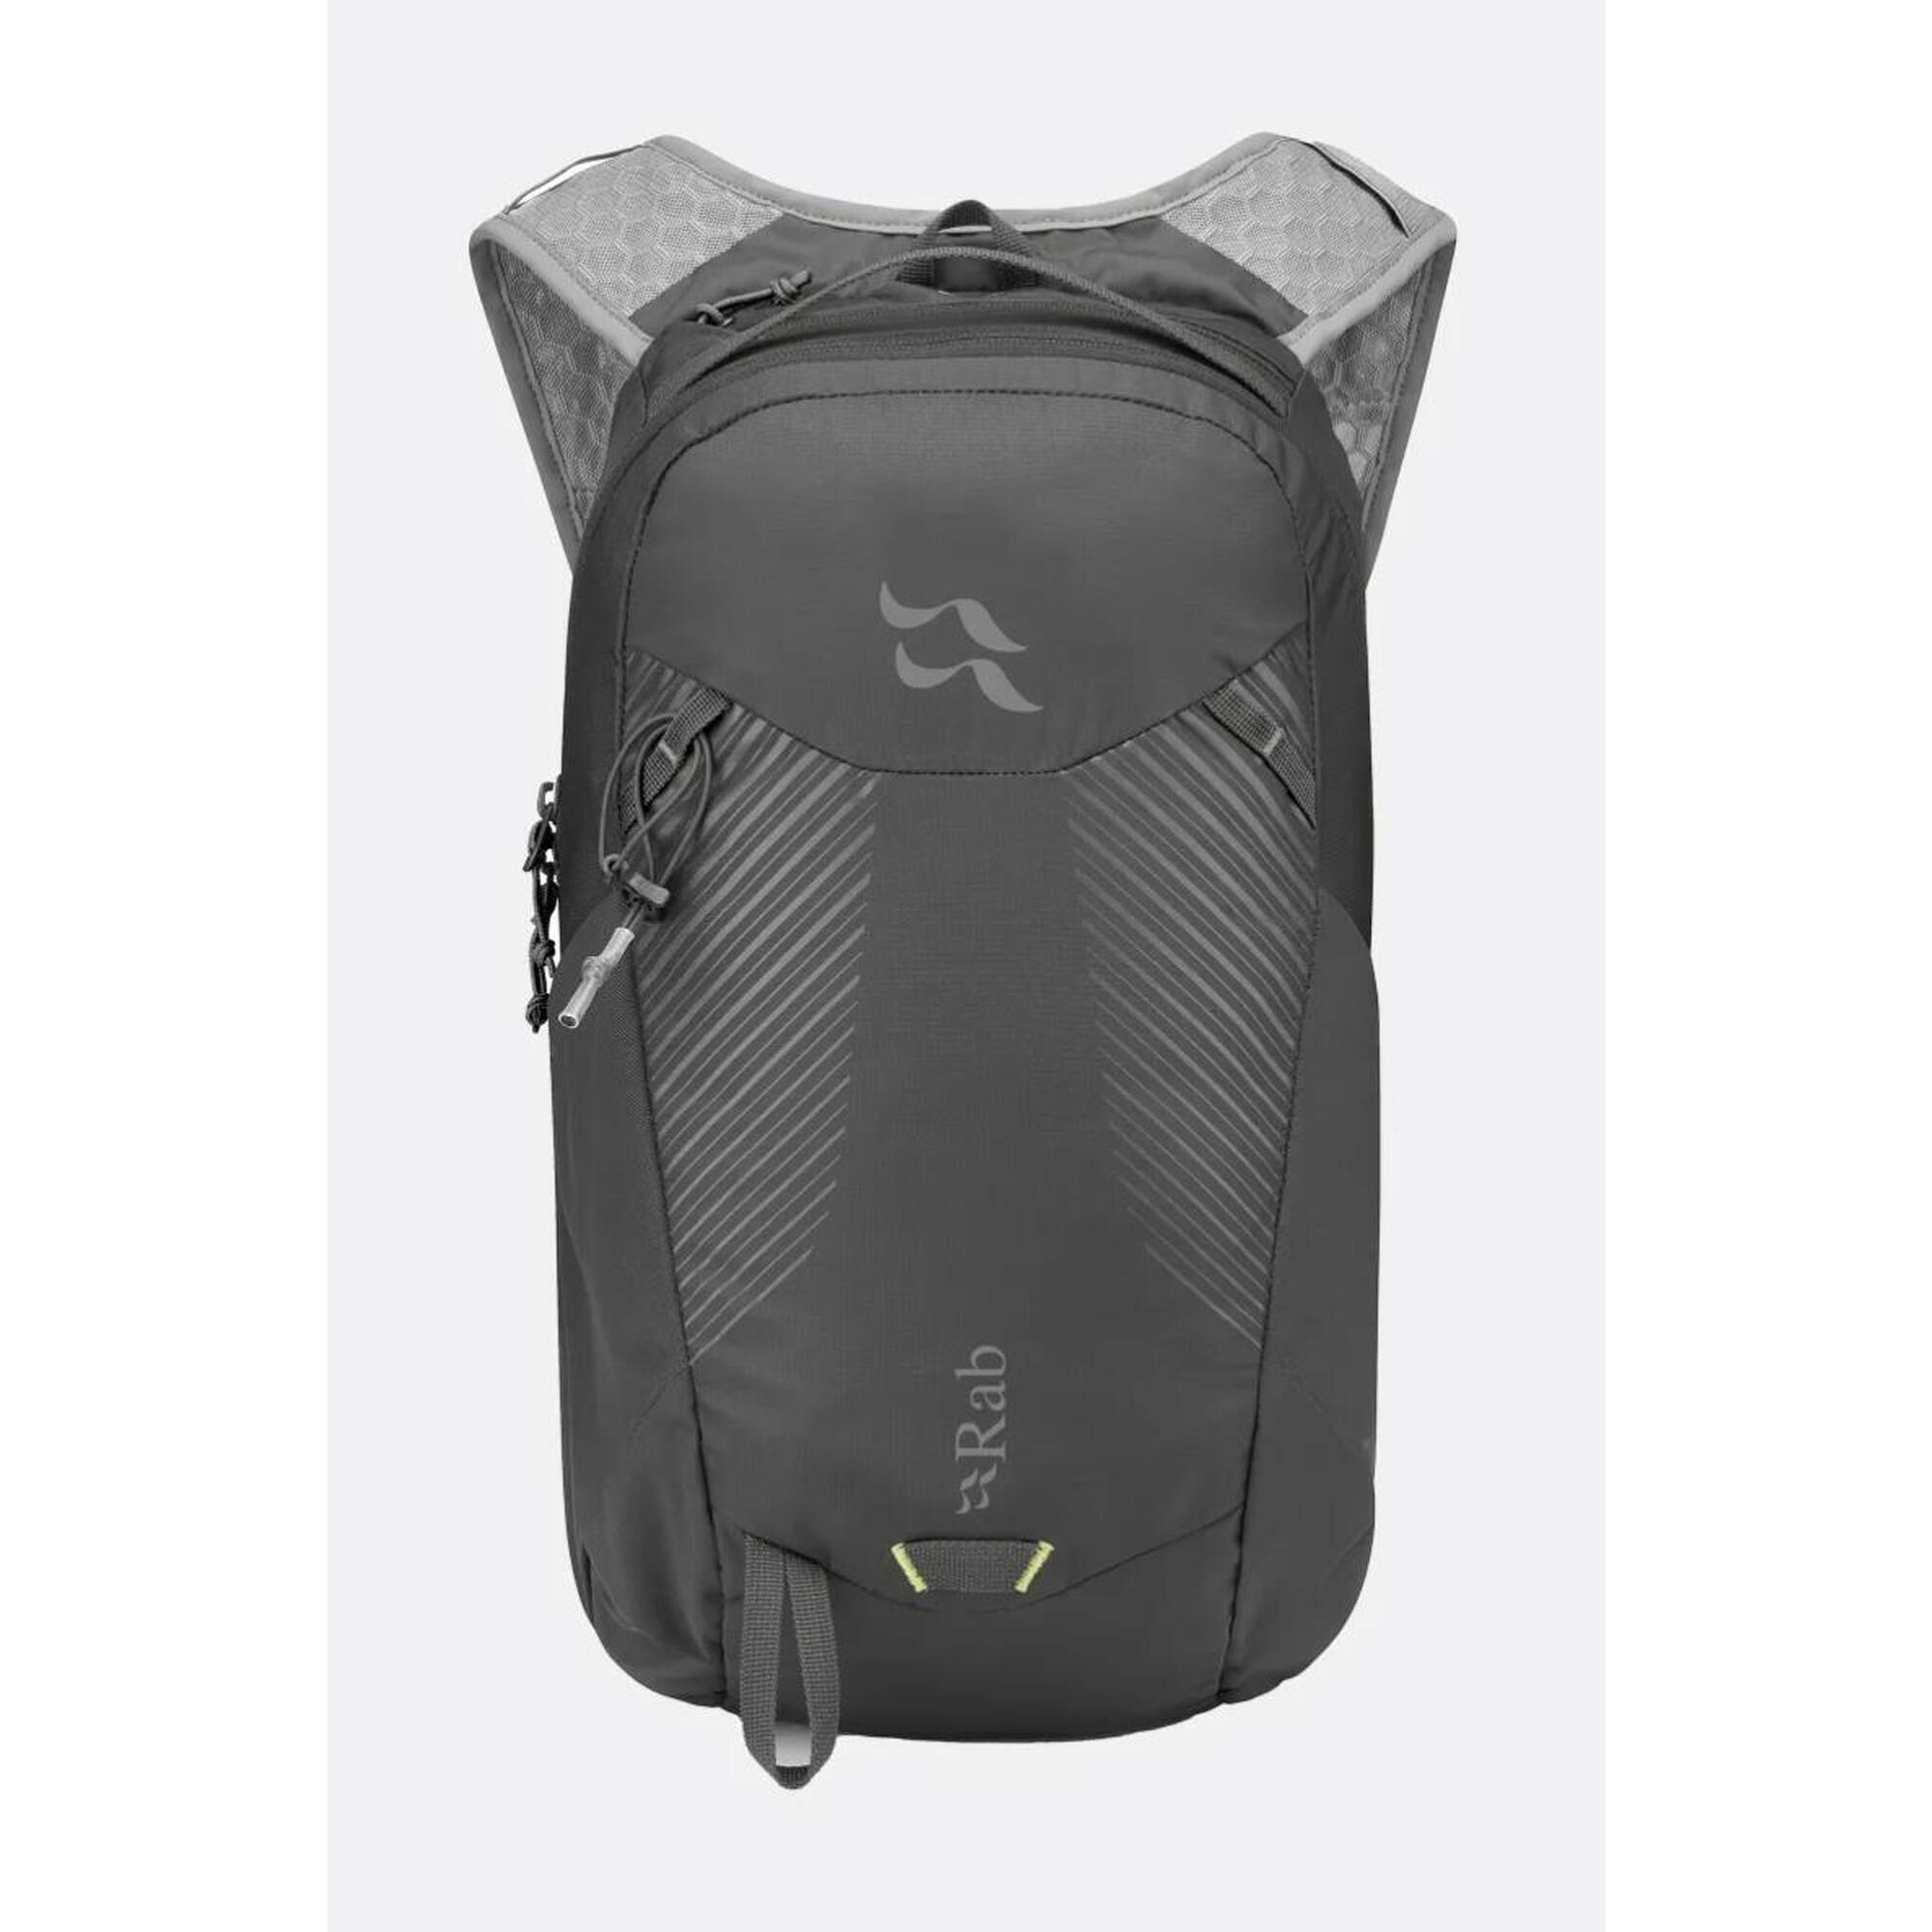 Aeon LT Hiking Backpack 12L - Black